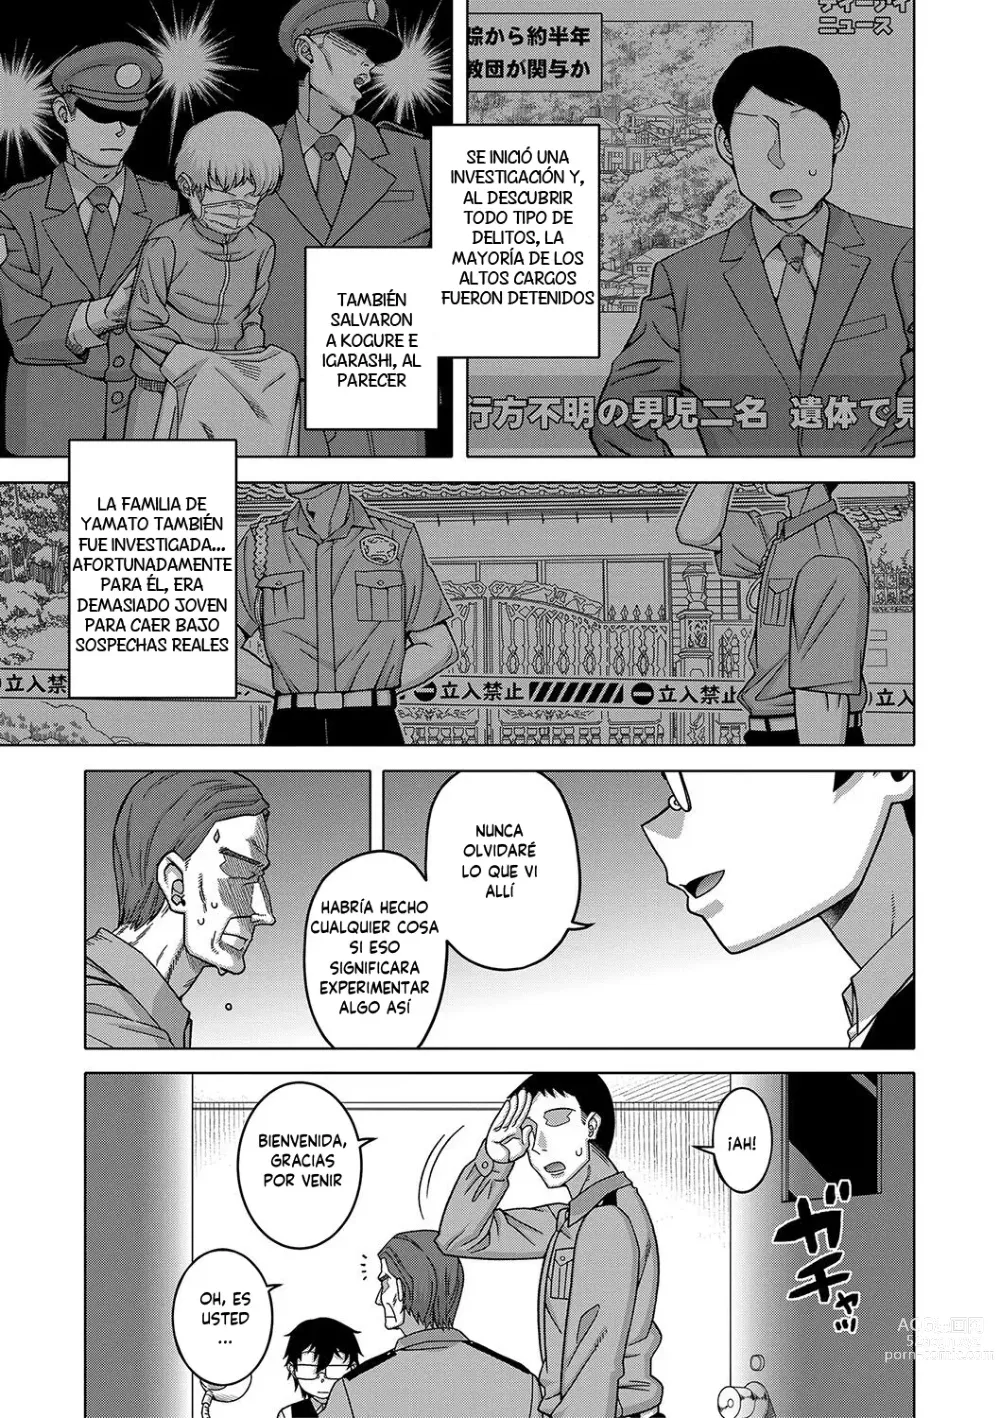 Page 206 of manga Kami-sama no Tsukurikata